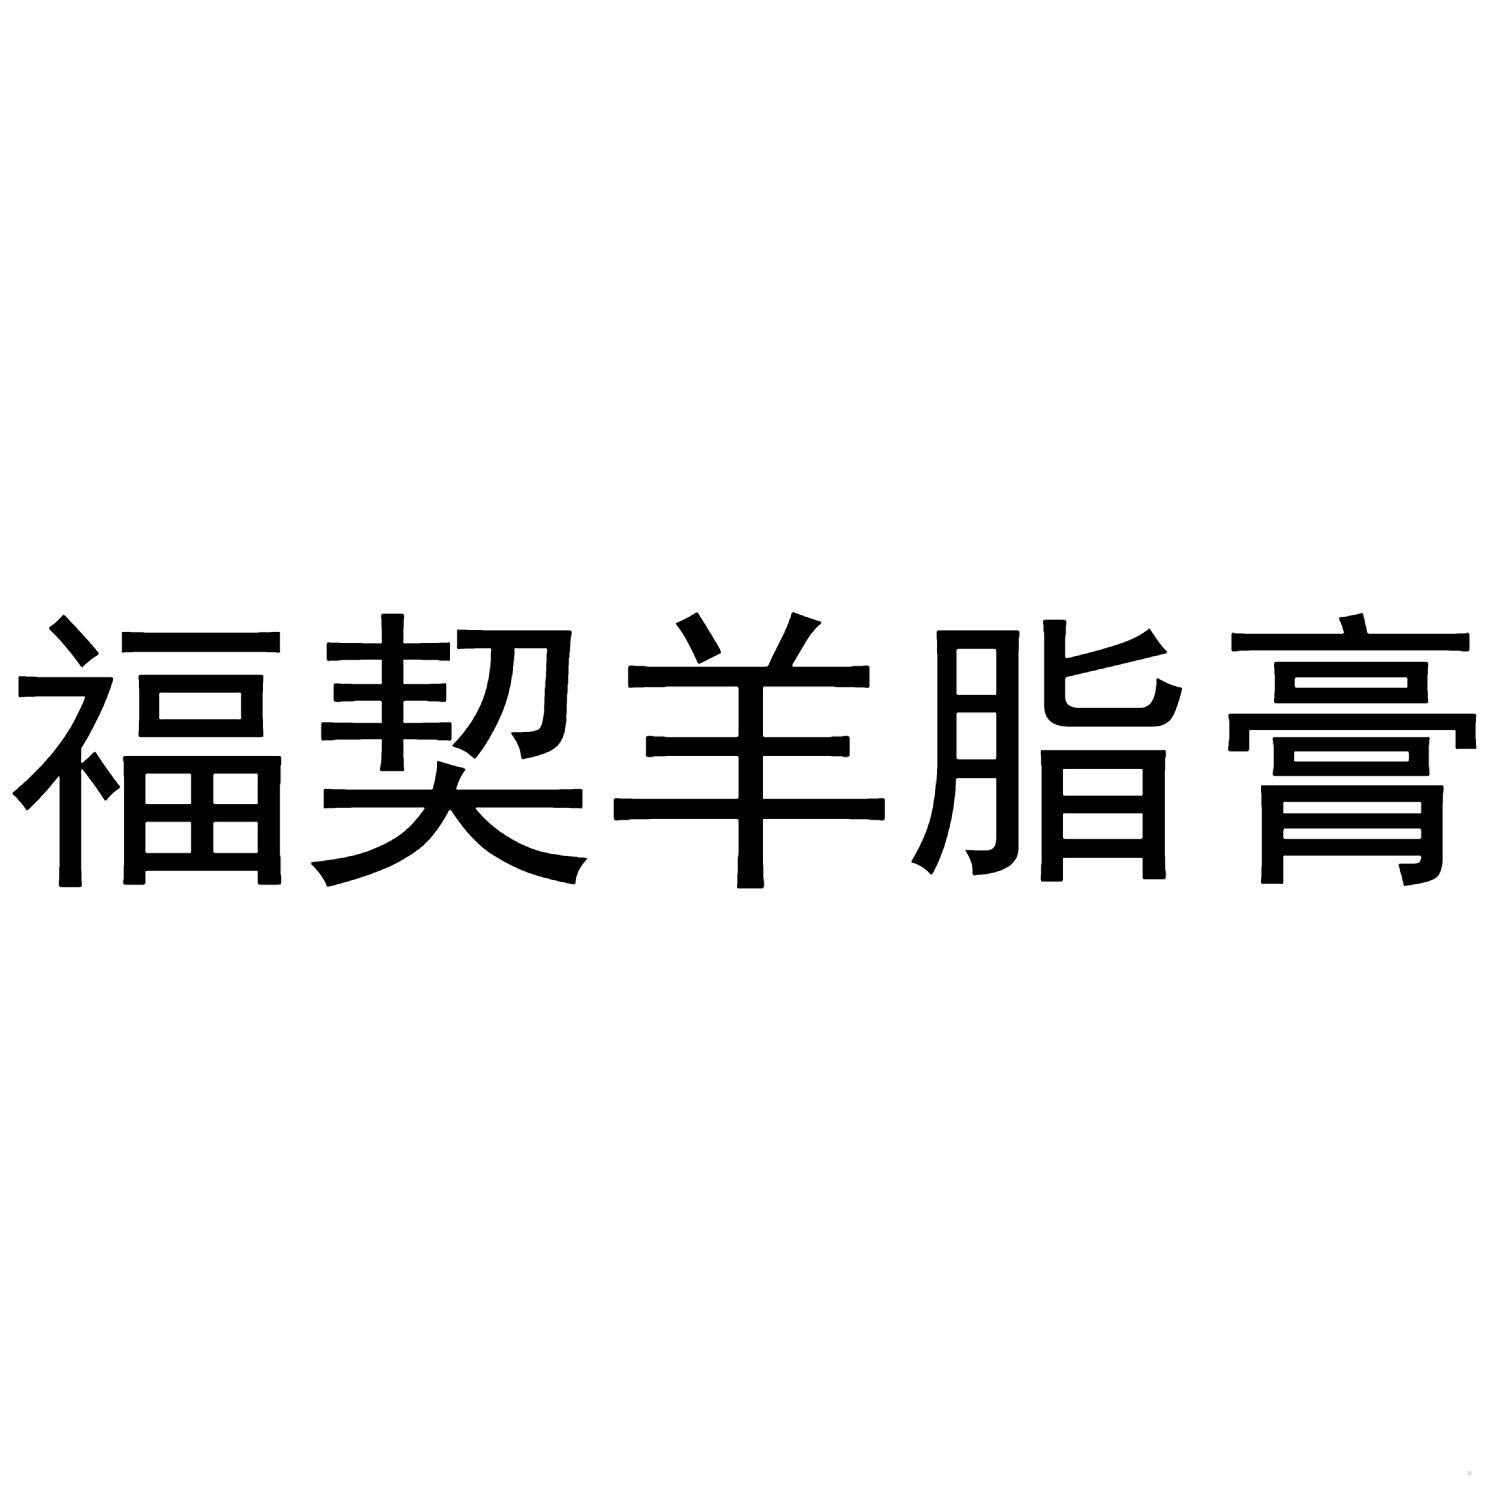 福契羊脂膏logo